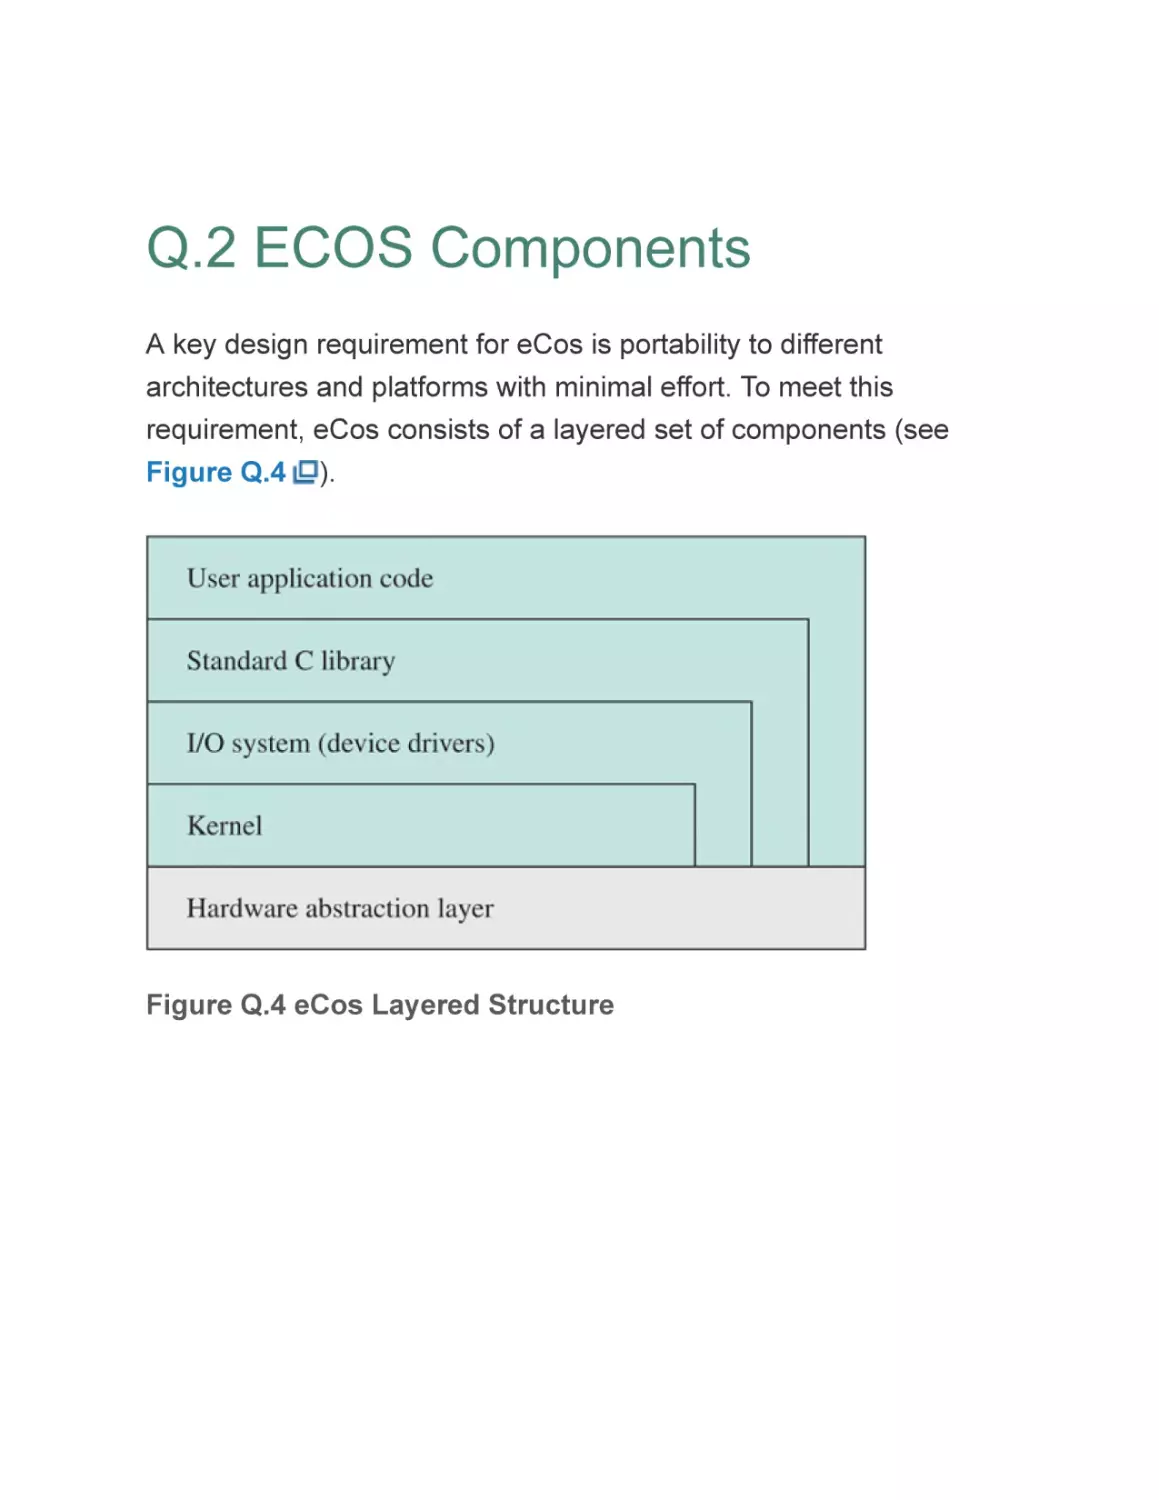 Q.2 ECOS Components